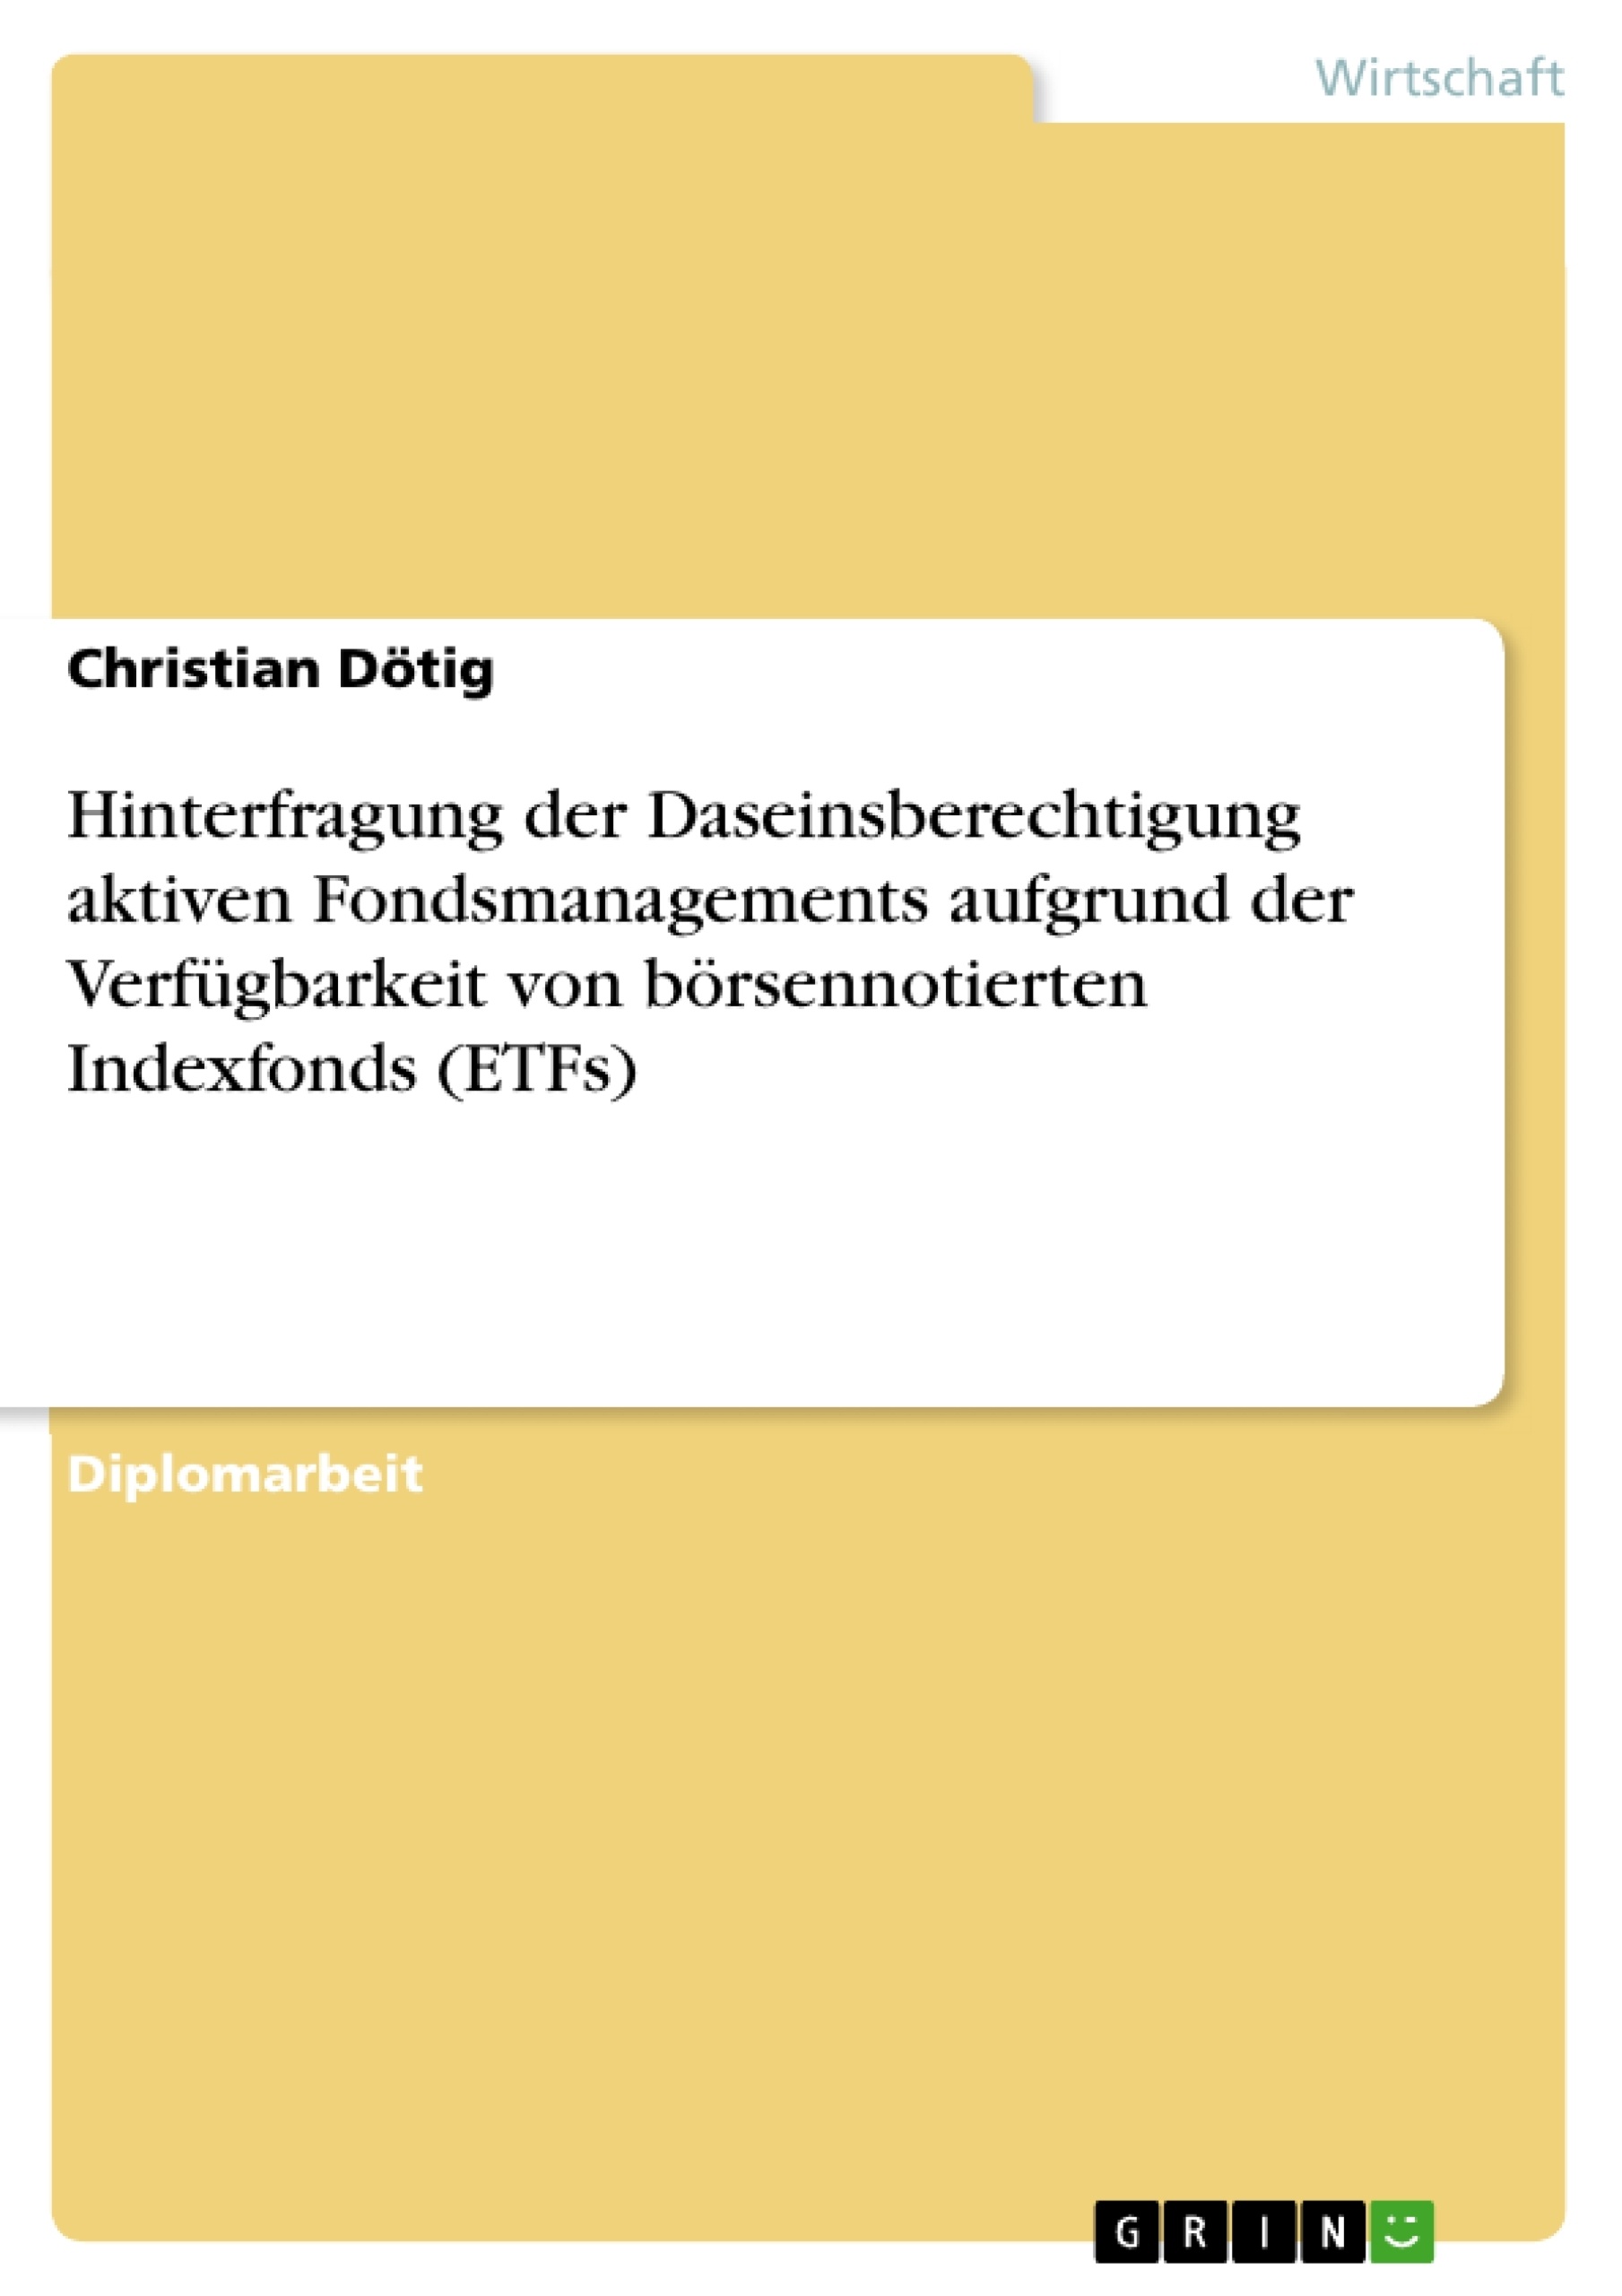 Título: Hinterfragung der Daseinsberechtigung aktiven Fondsmanagements aufgrund der Verfügbarkeit von börsennotierten Indexfonds (ETFs)